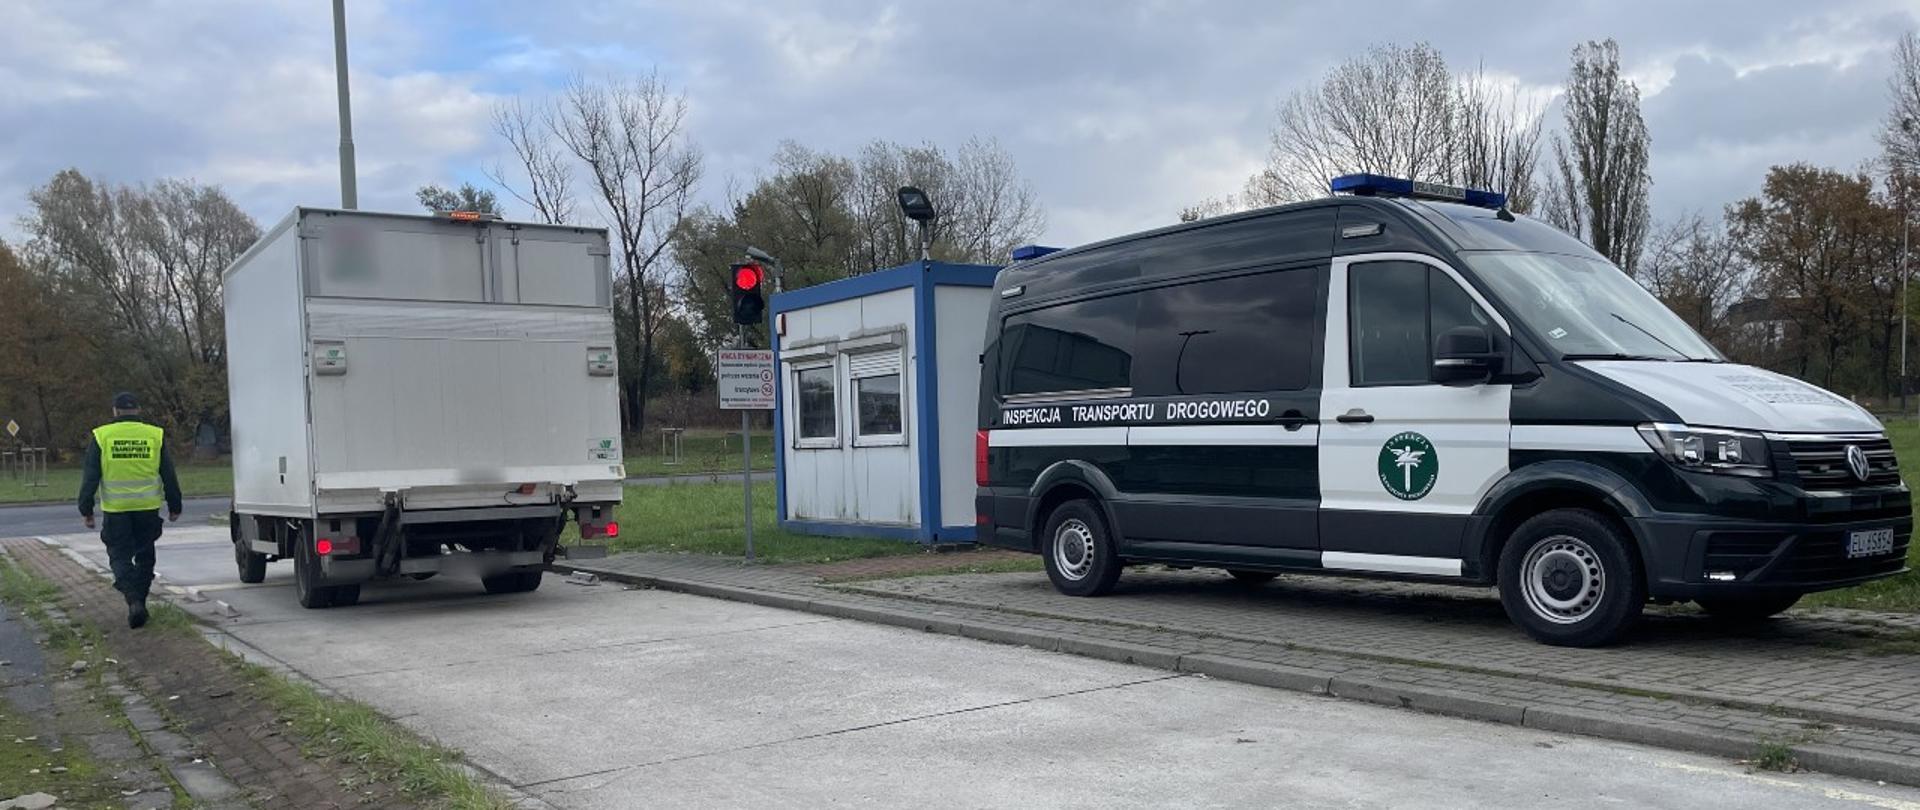 Kontrole tonażu busów prowadzone przez inspektorów Inspekcji Transportu Drogowego na terenie Łodzi.